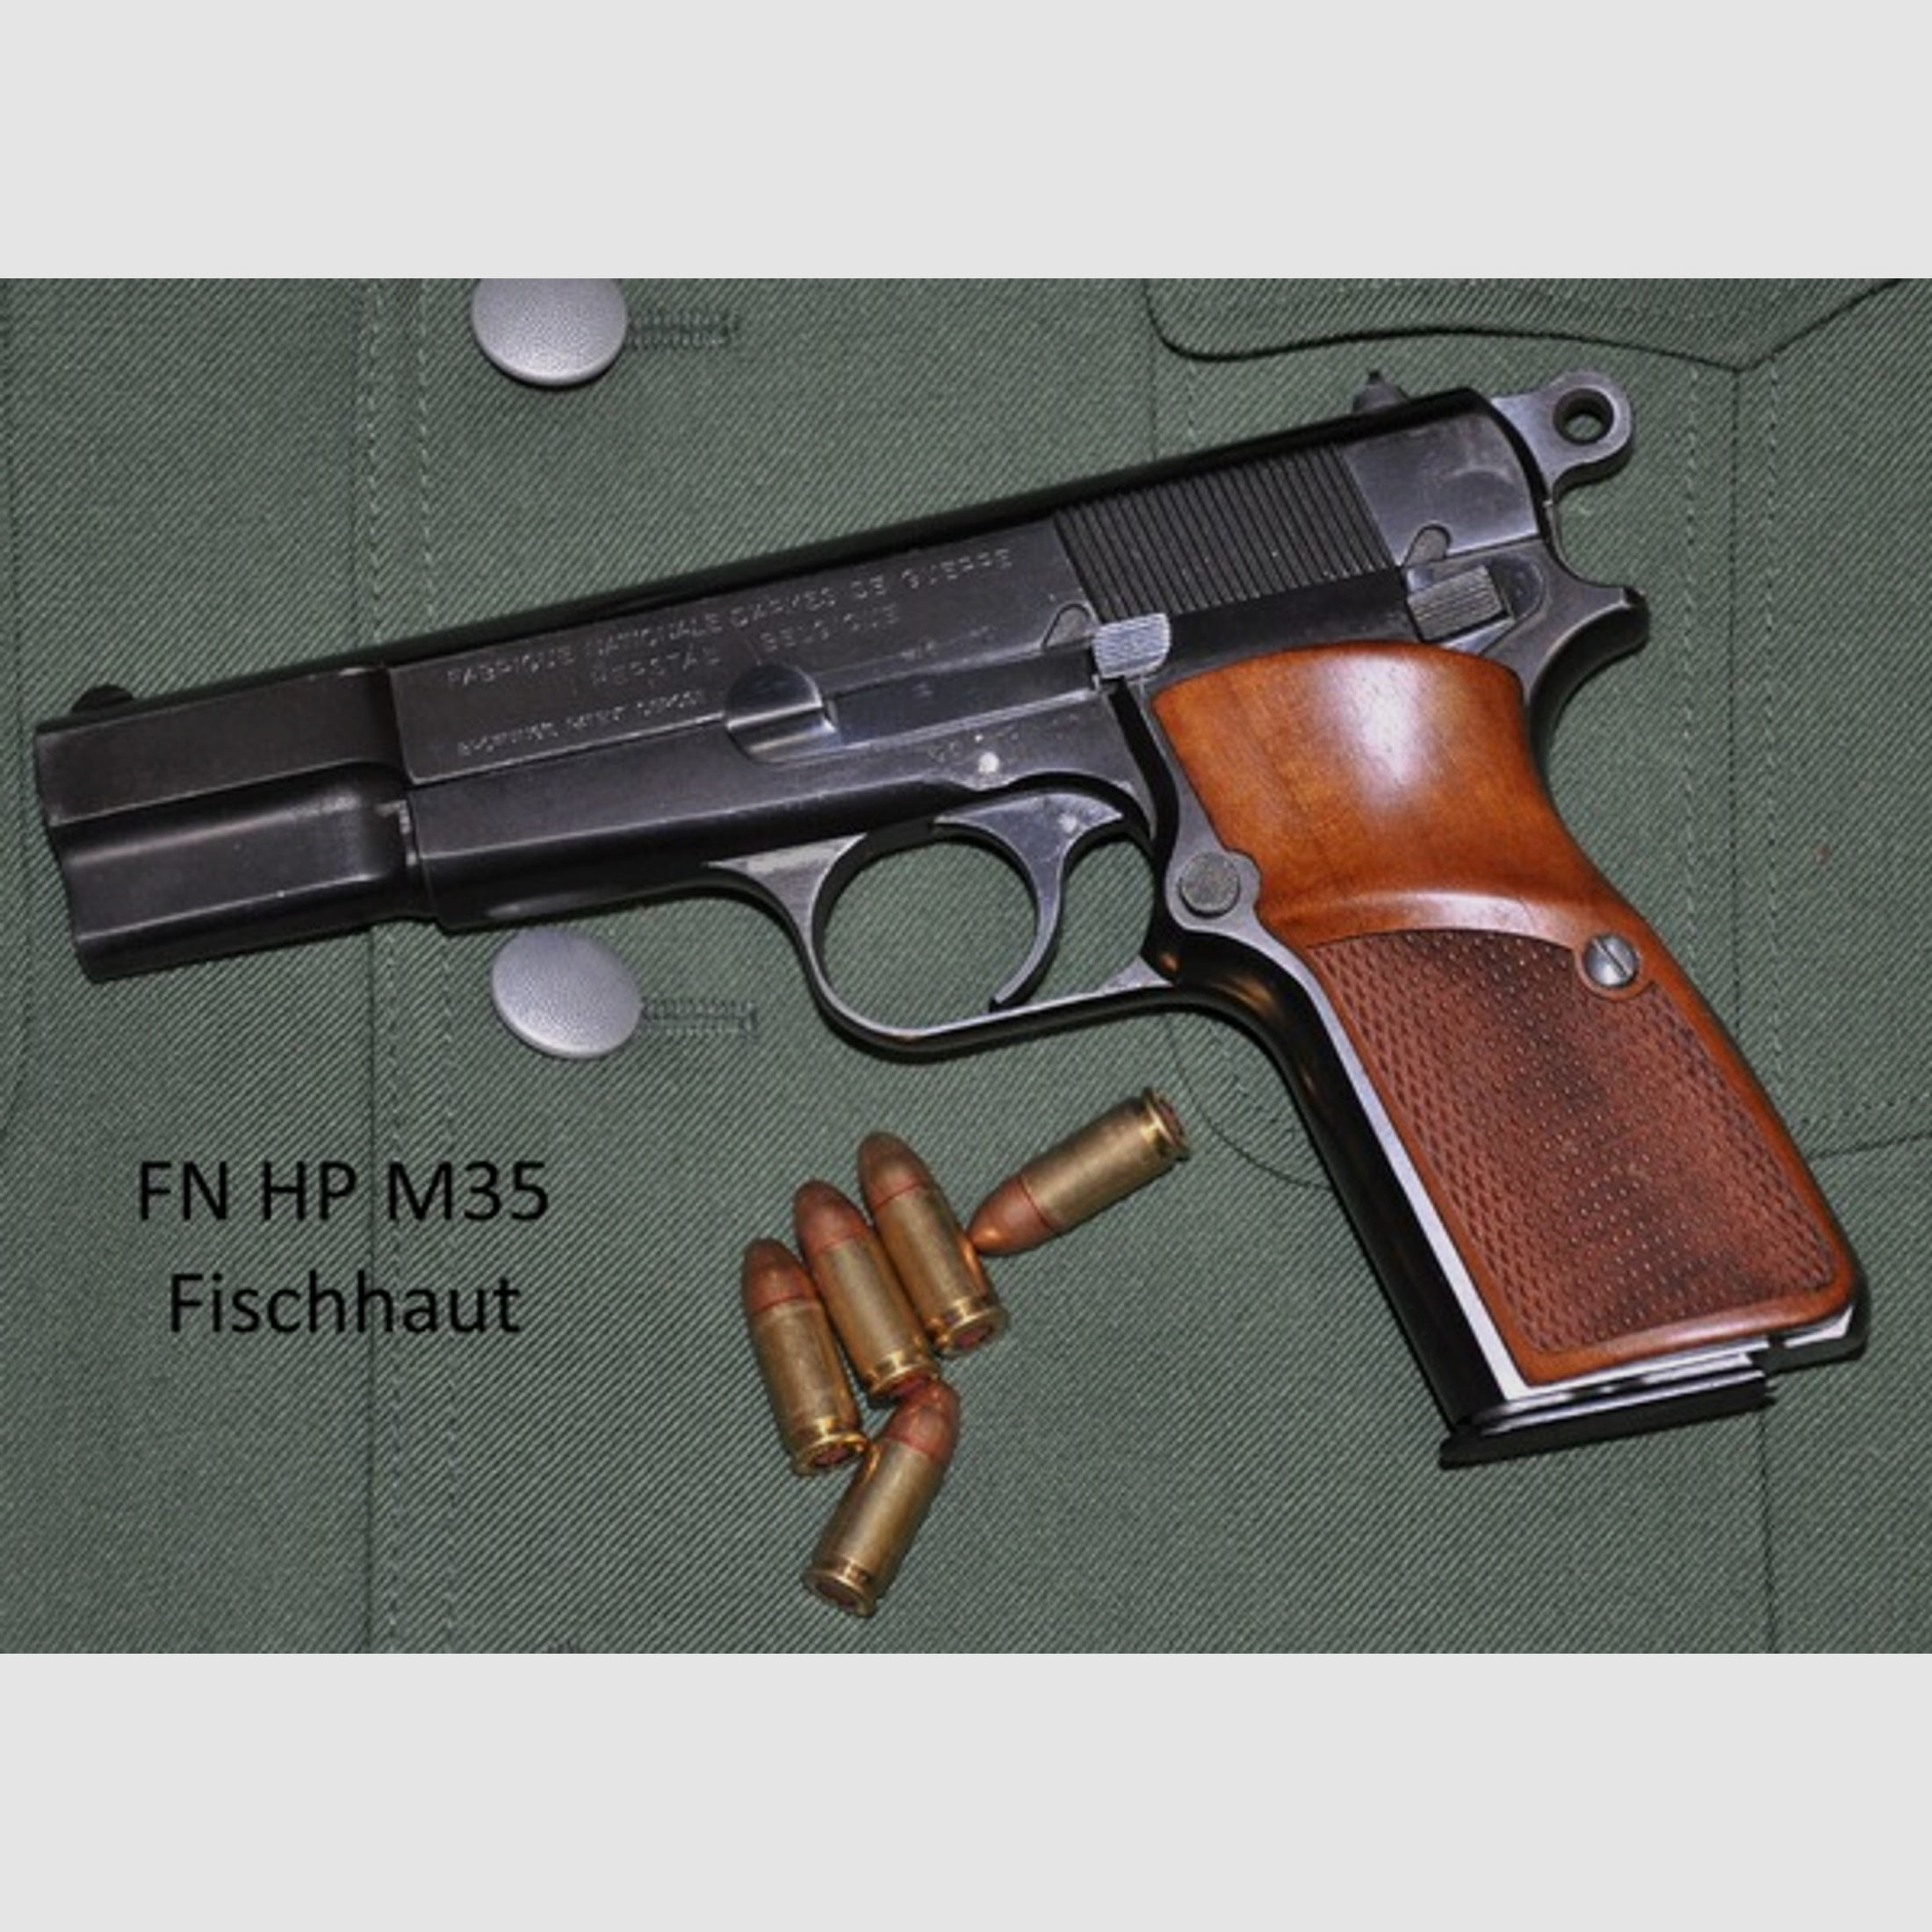 Nussbaum-Griffschalen für FN HP M35 mit Fischhaut